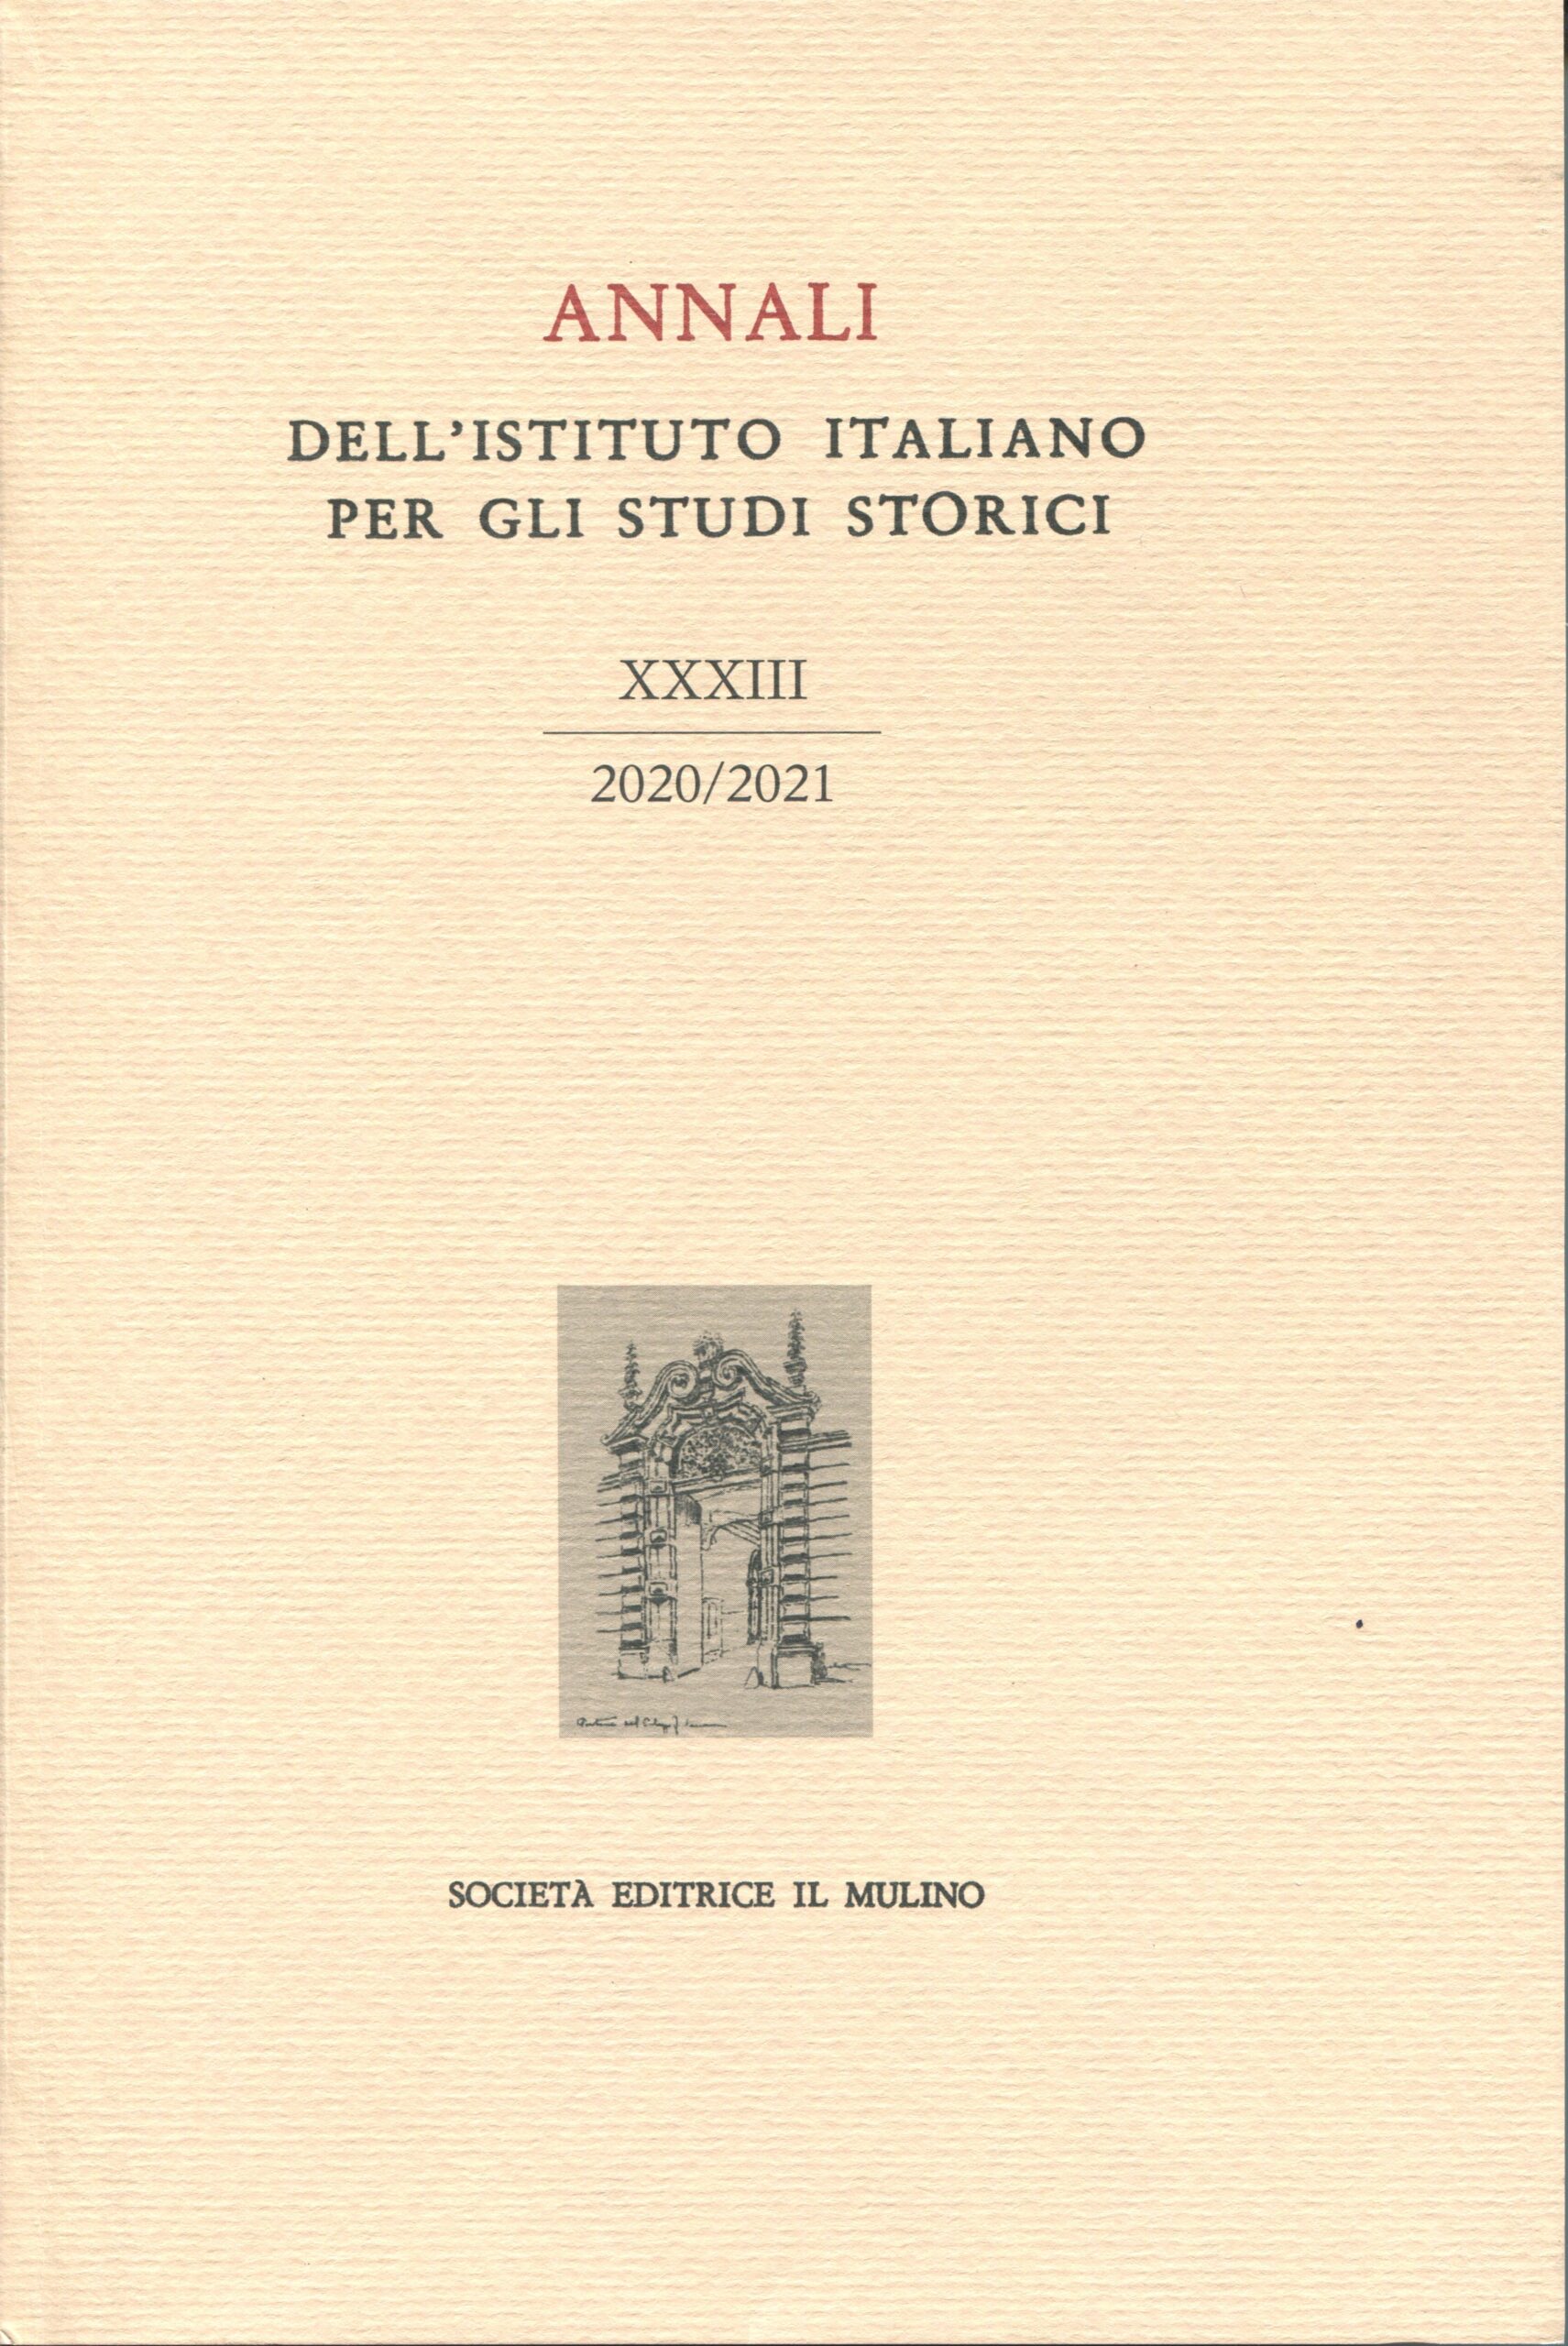 Annali dell’Istituto italiano per gli studi storici